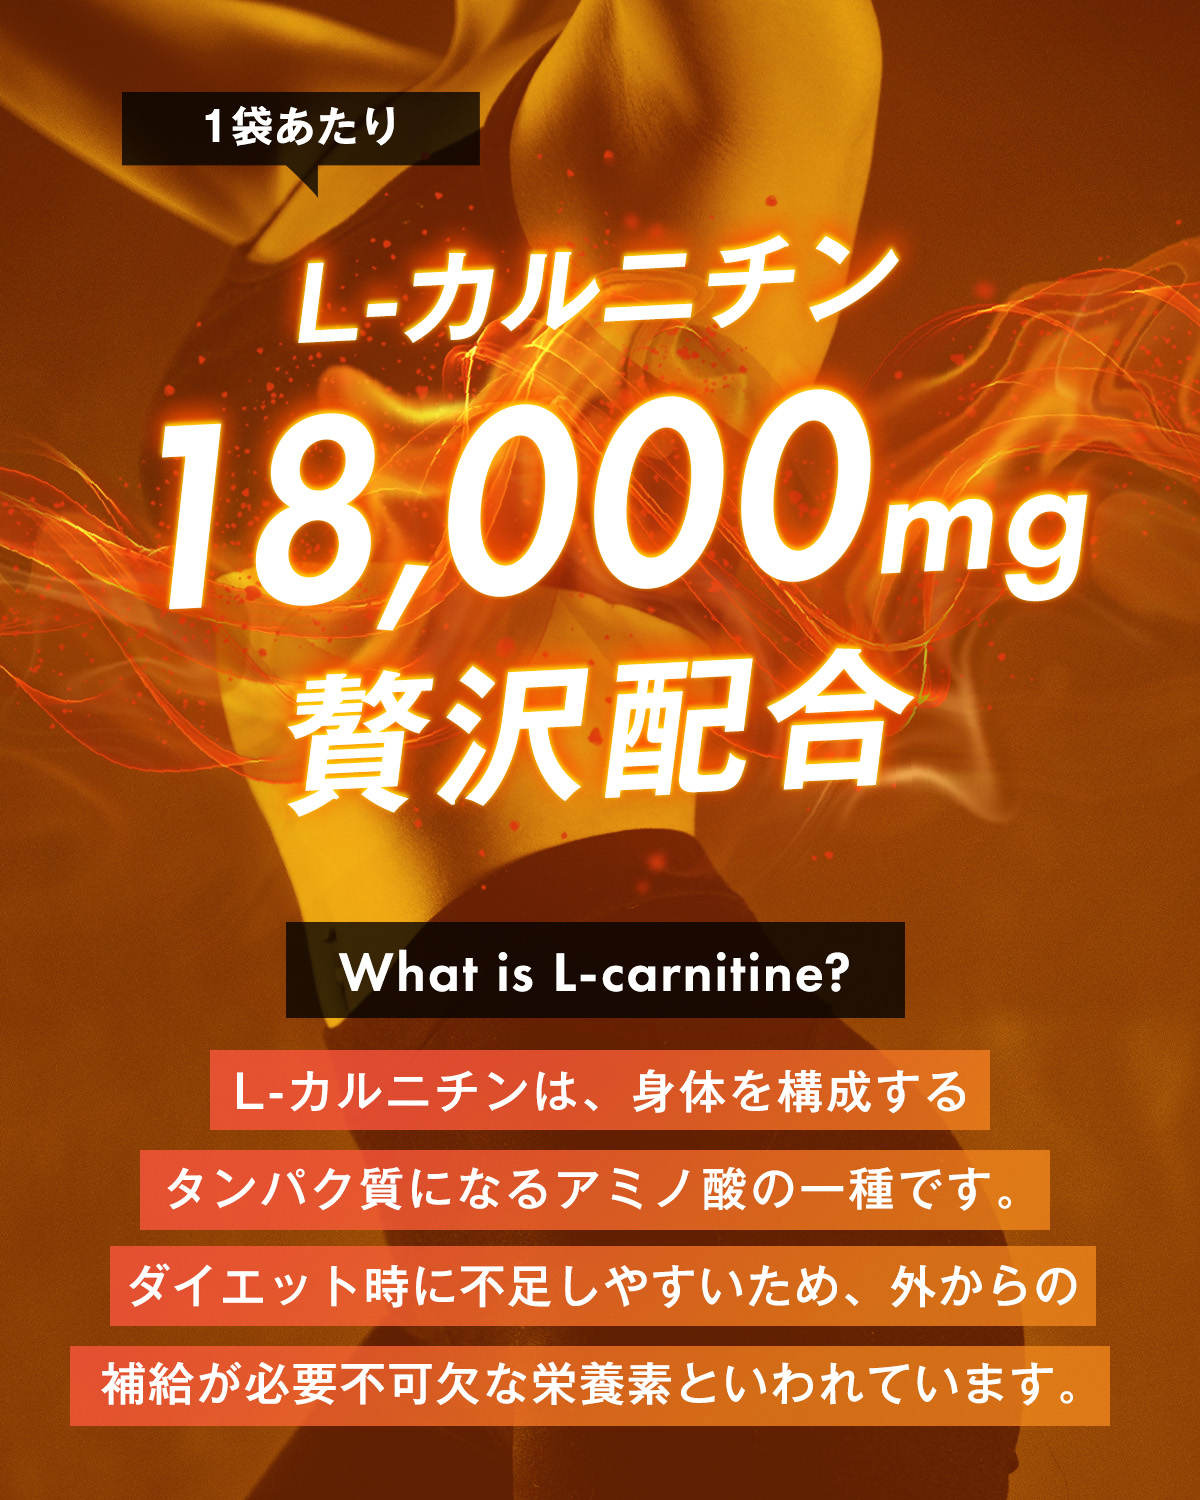 ハルクファクター L-カルニチン [90粒 30日分] 3袋